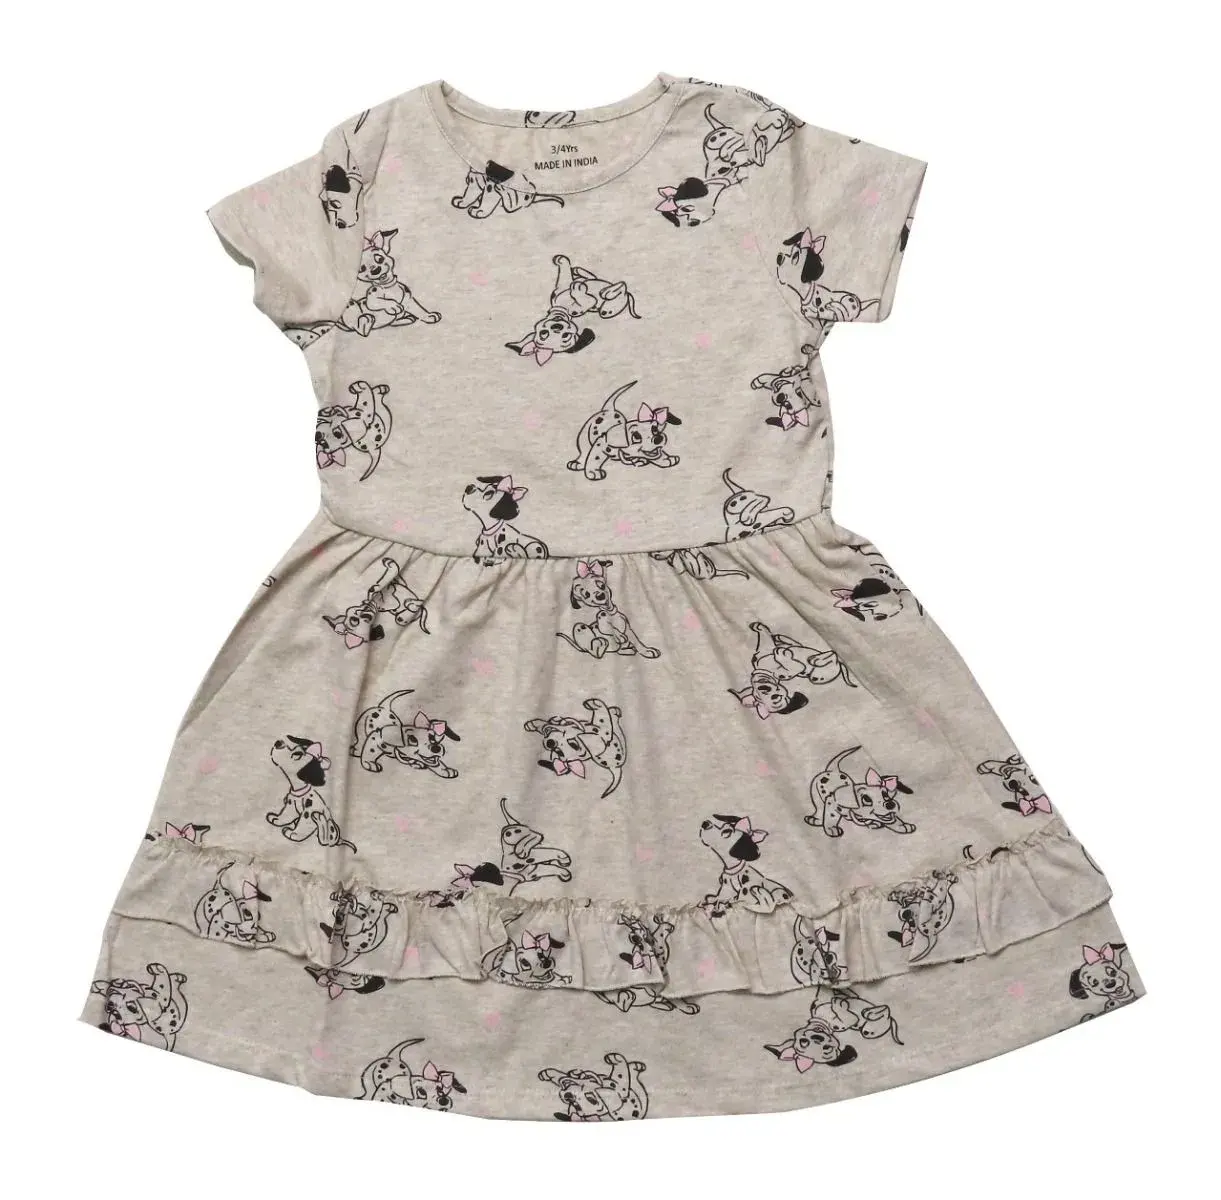 Venta al por mayor de alta calidad del vestido de verano de los niños para las niñas de manga corta de estilo Casual All-Over Printed Ecru en Material de algodón